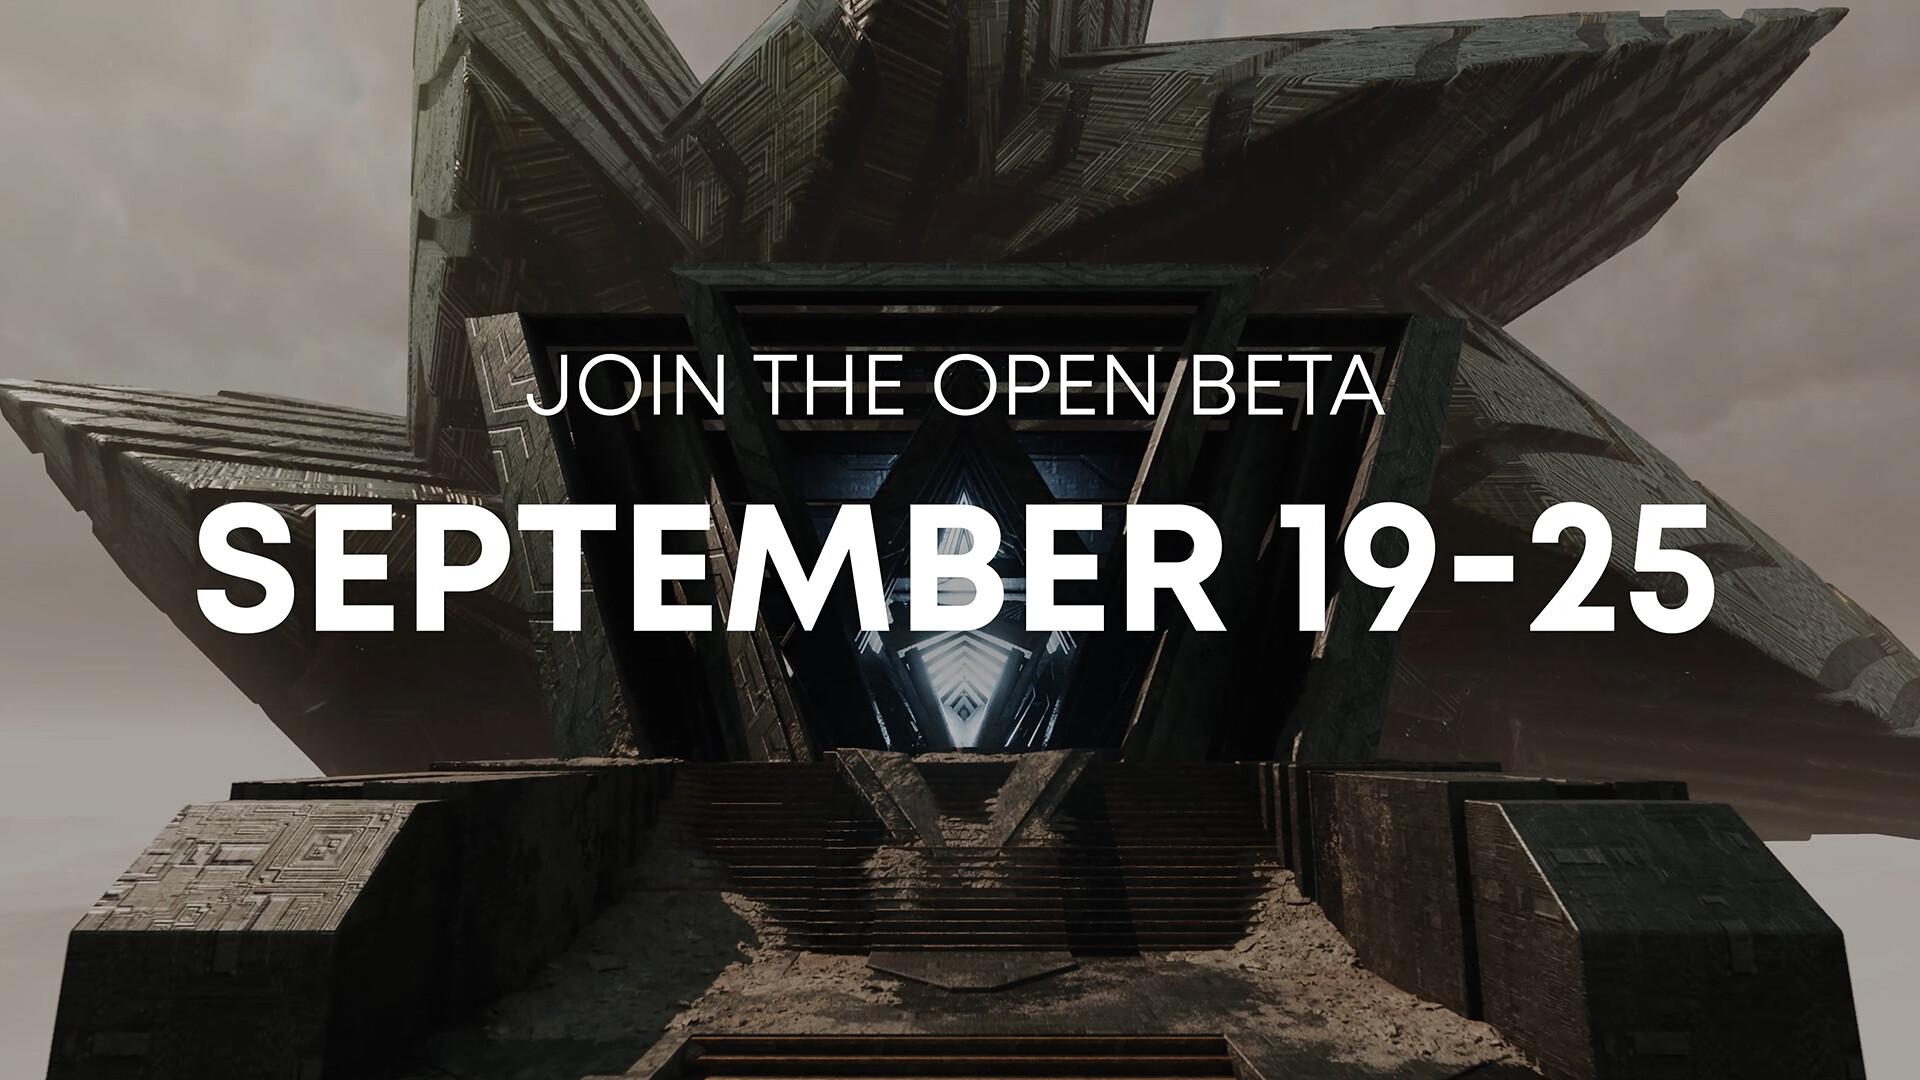 Partecipate all'open beta dal 19 al 25 settembre